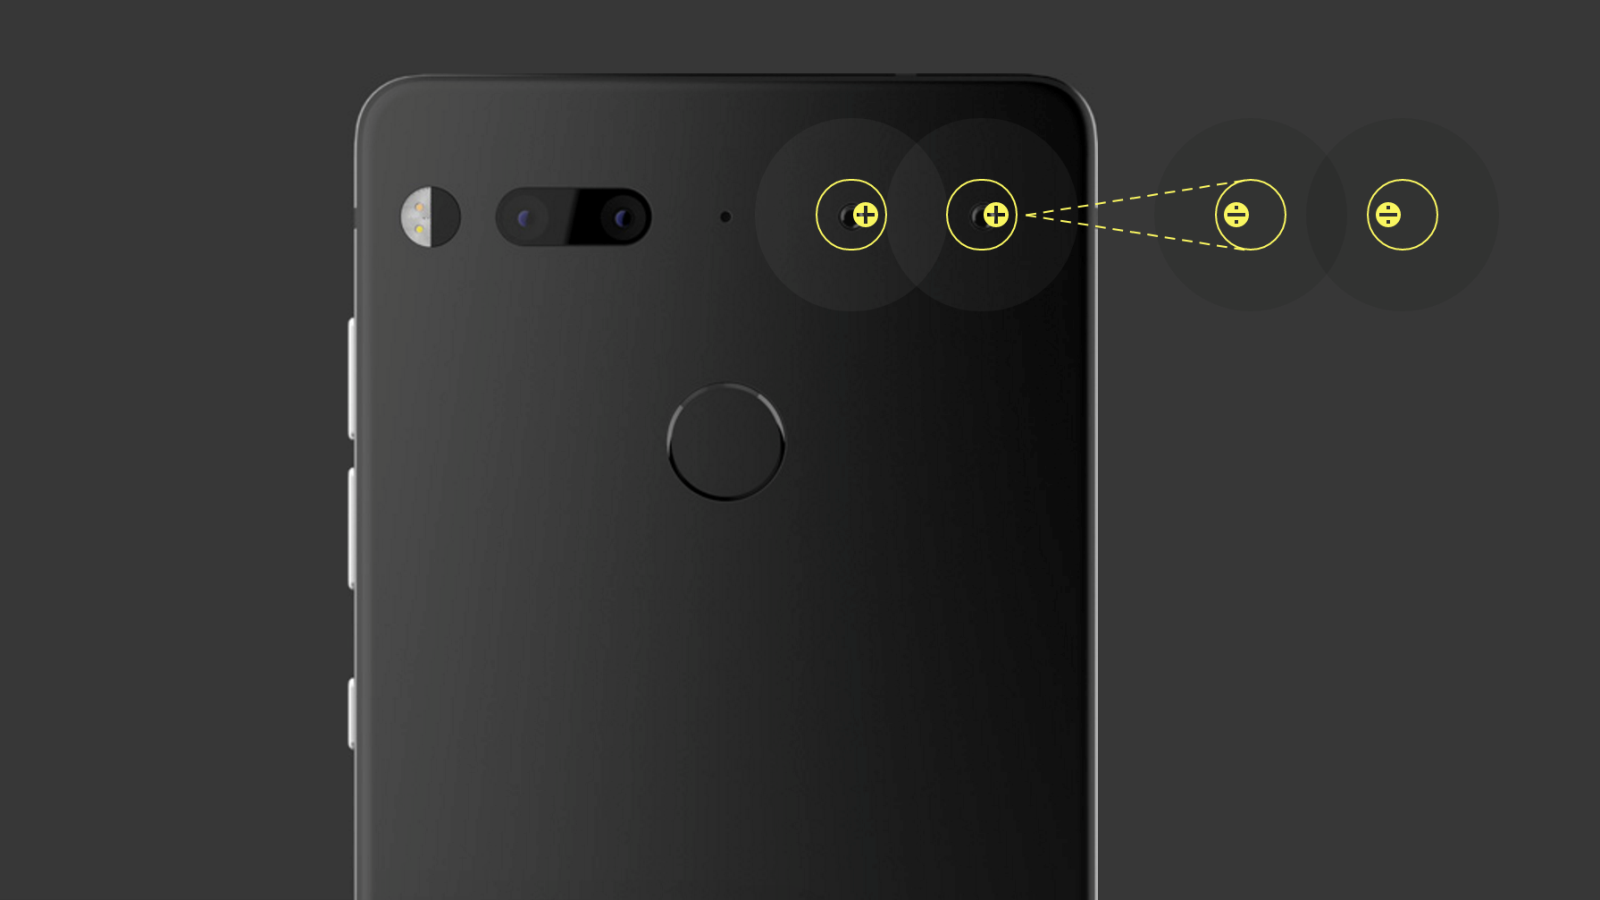 من ملحقات الهاتف التي أعلنت عنها الشركة هو كاميرا قادرة على التصوير بزاوية 360 درجة.